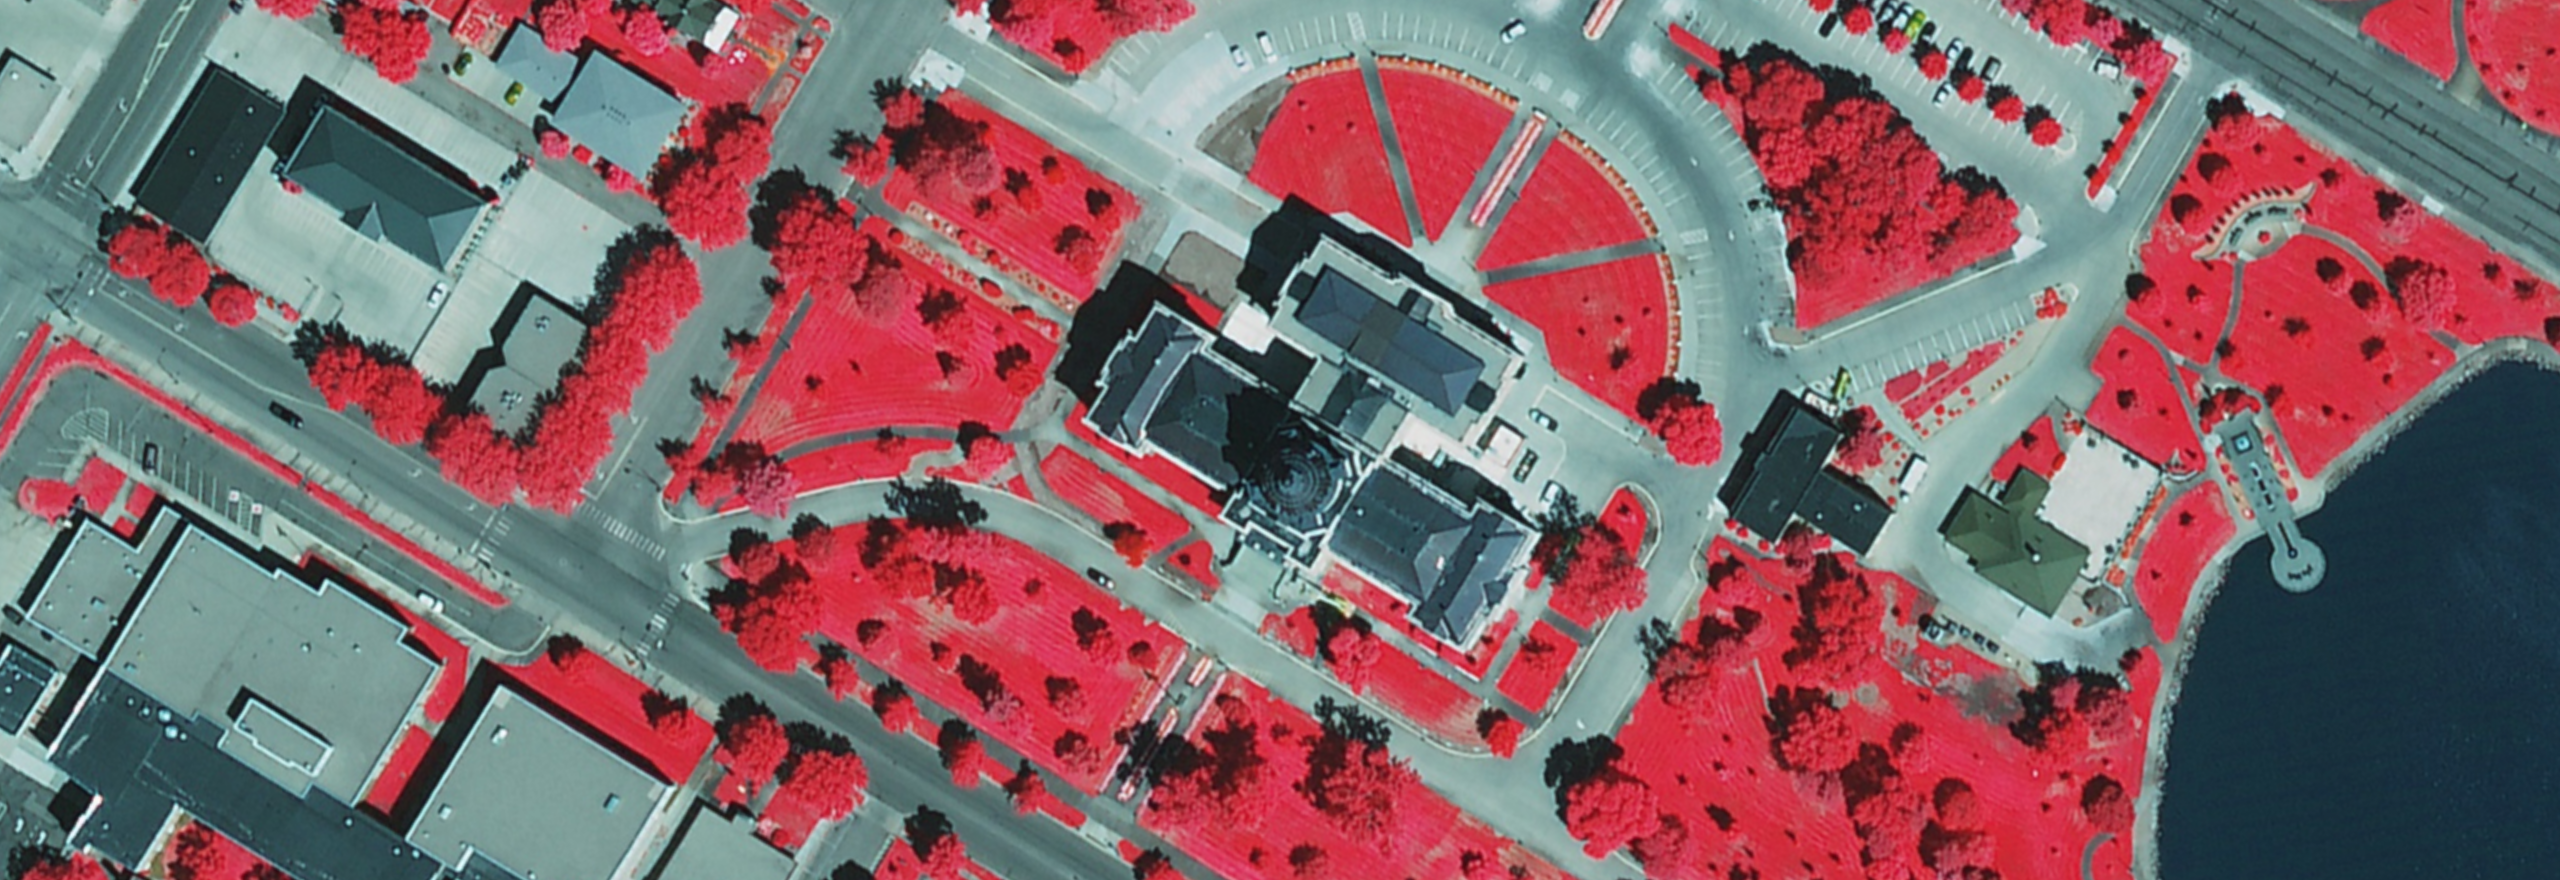 Farb-Infrarot-Luft-Orthofoto eines Regierungsgebäudes